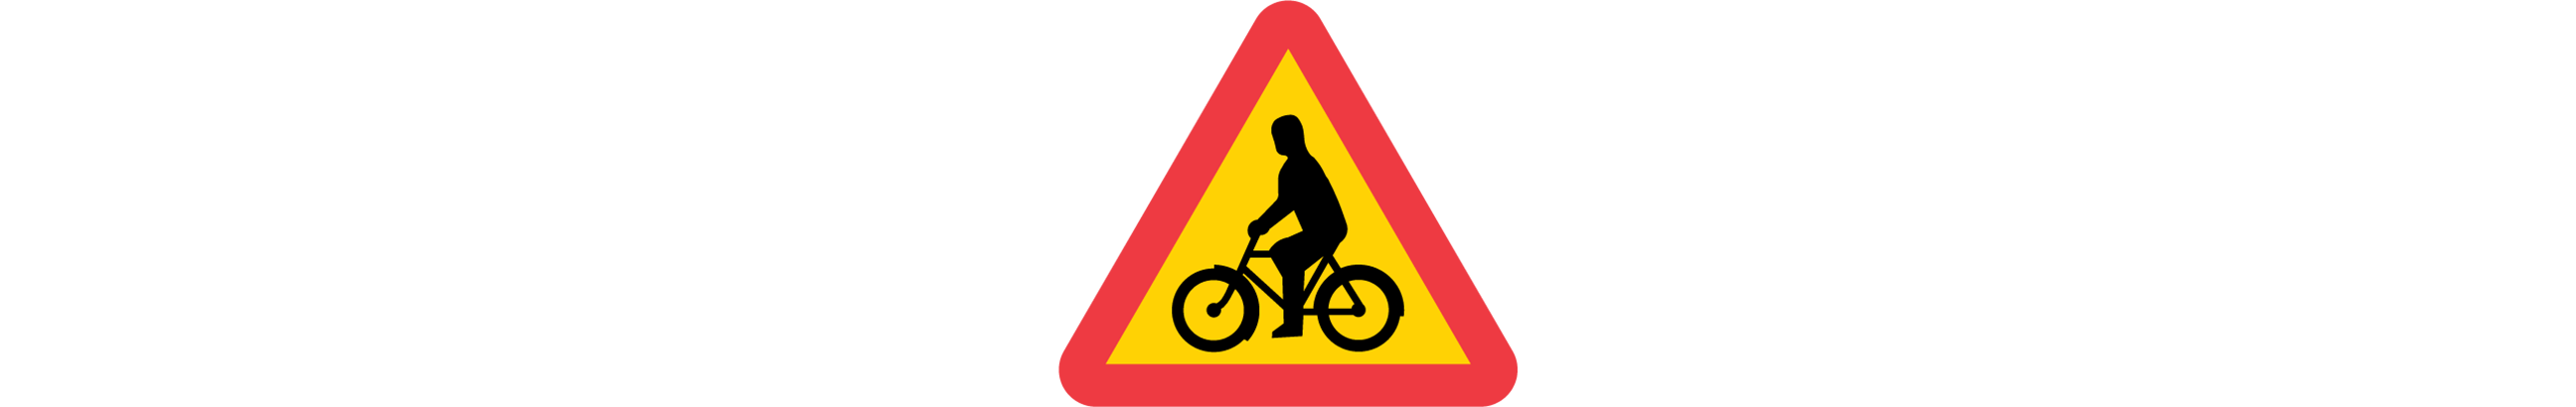 varning för cyklande och mopedförare